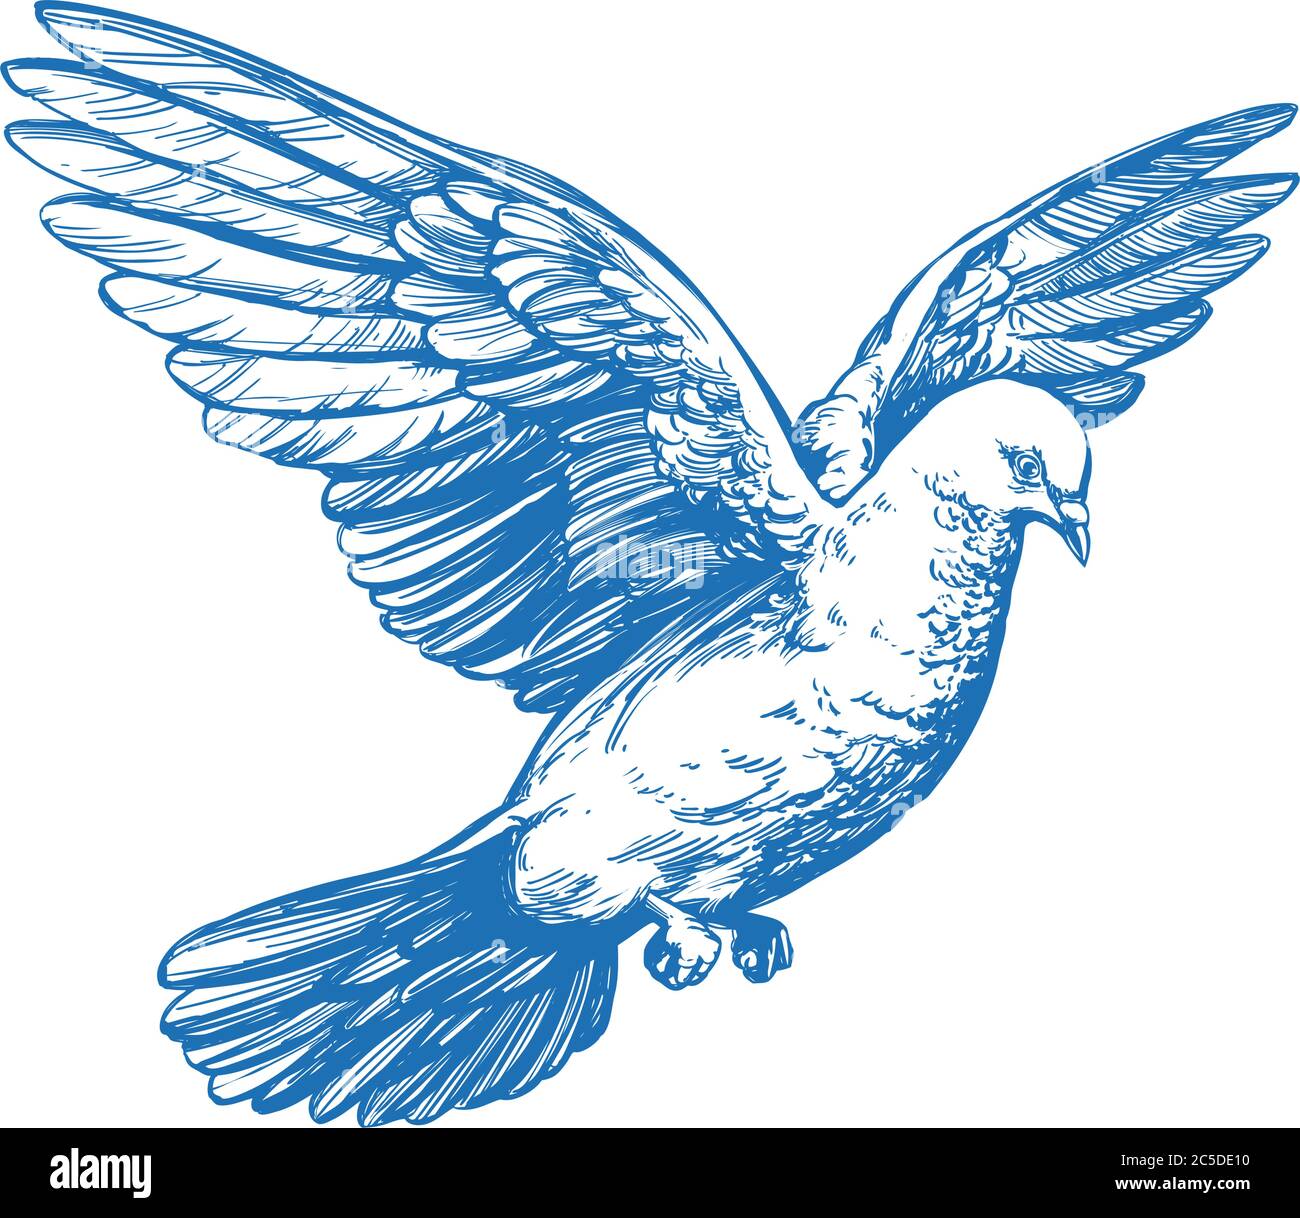 Resultado de imagen para dibujos de aves a lapiz  Bird pencil drawing  Realistic animal drawings Bird drawings